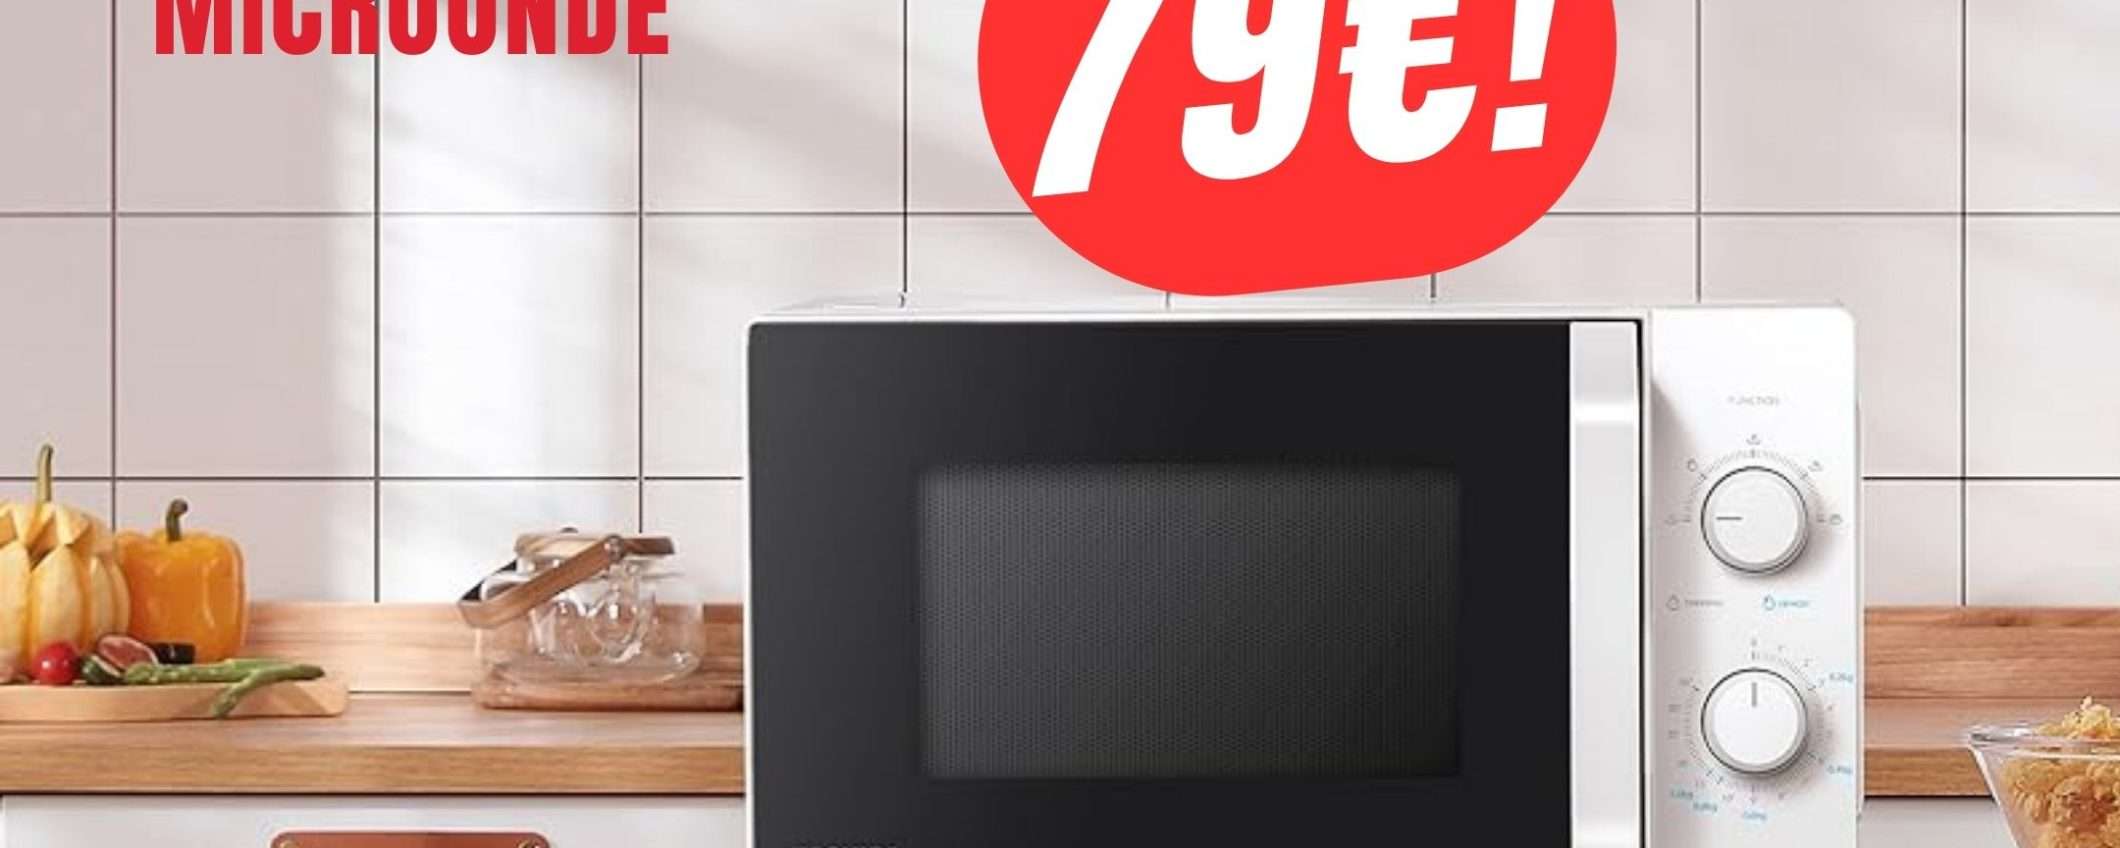 Grazie all'Offerta di Amazon, potrai avere il Microonde Toshiba a soli 79€!